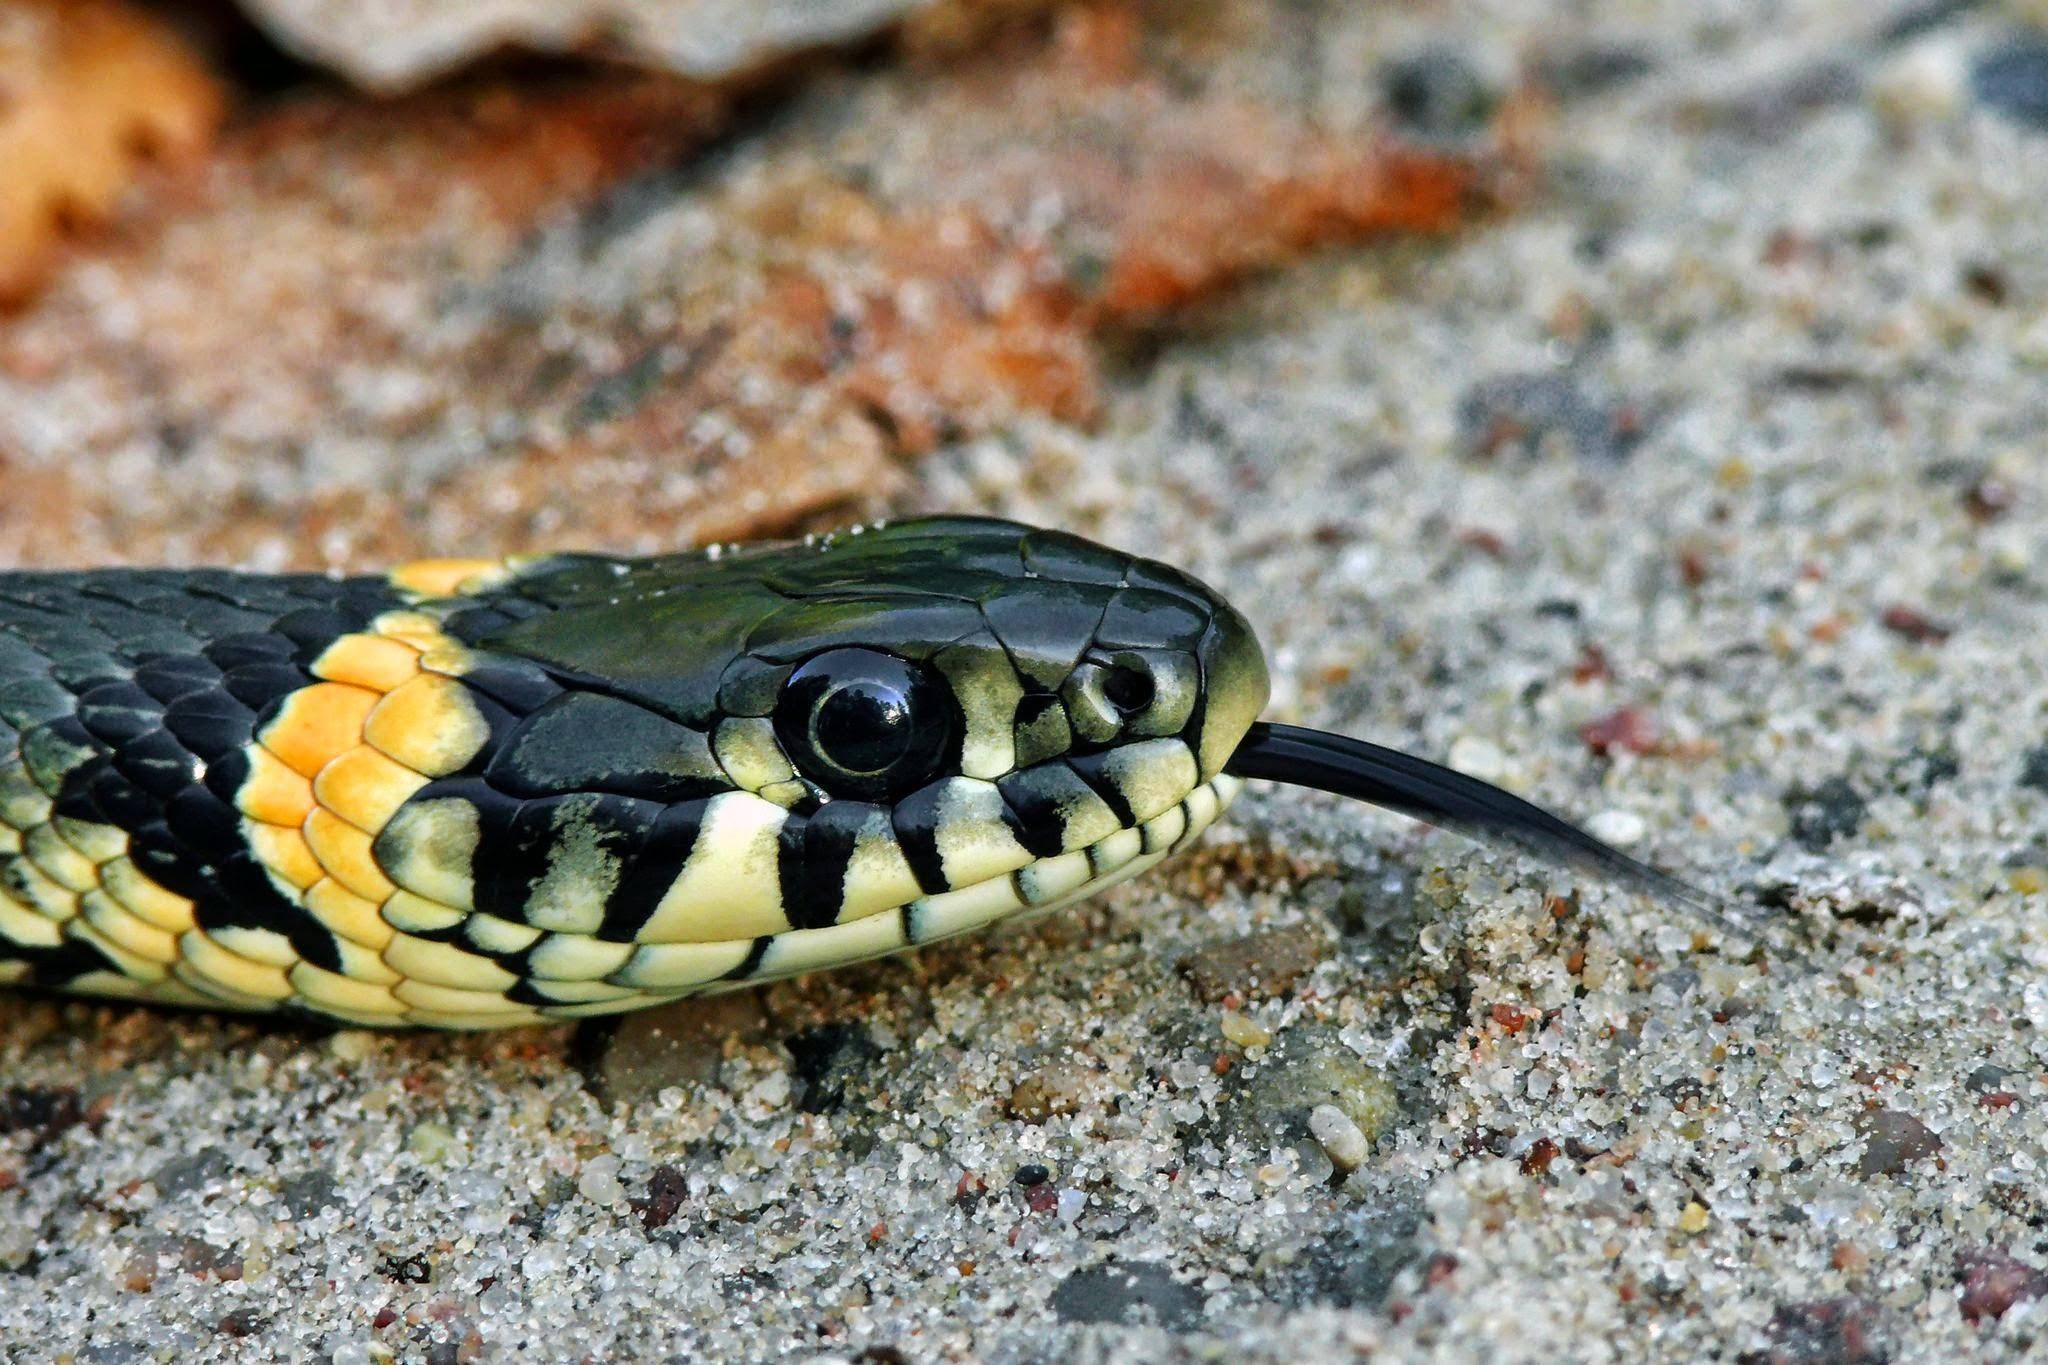 Виды змей. описание, особенности, названия и фото видов змей